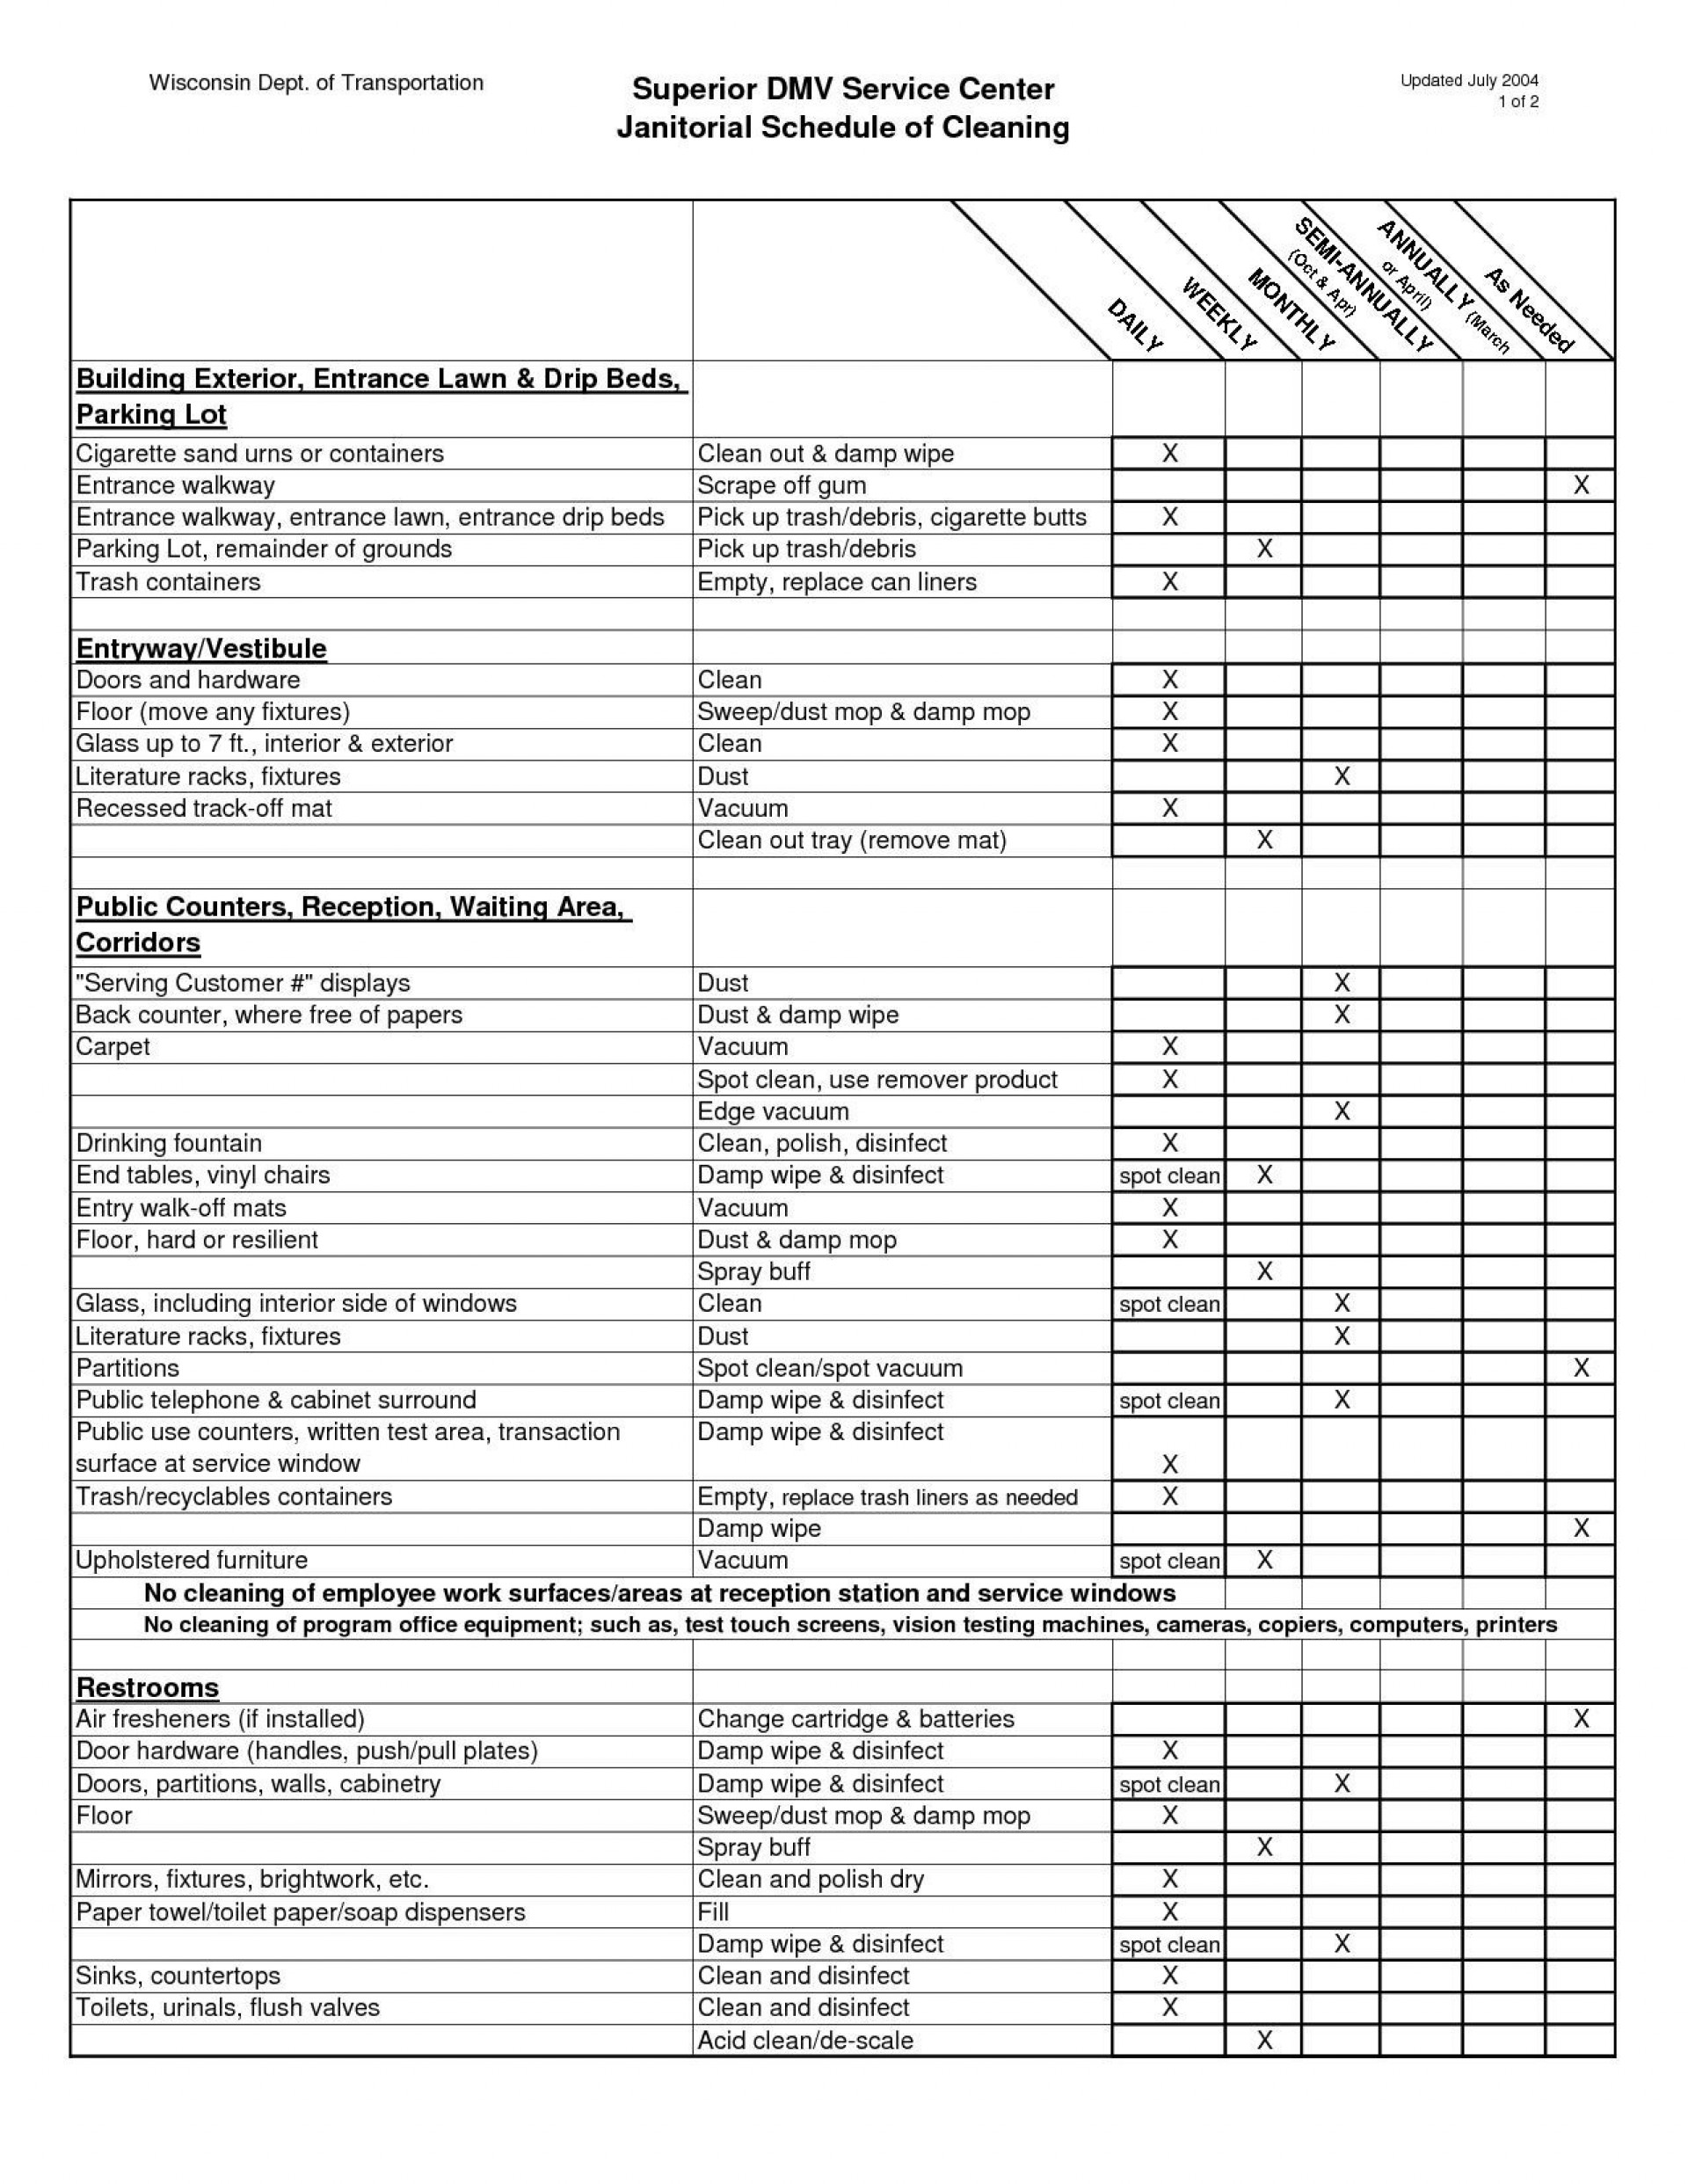 Samples Of Door Hardware Schedule Template Excel Within Door Hardware Schedule Template Excel In Excel